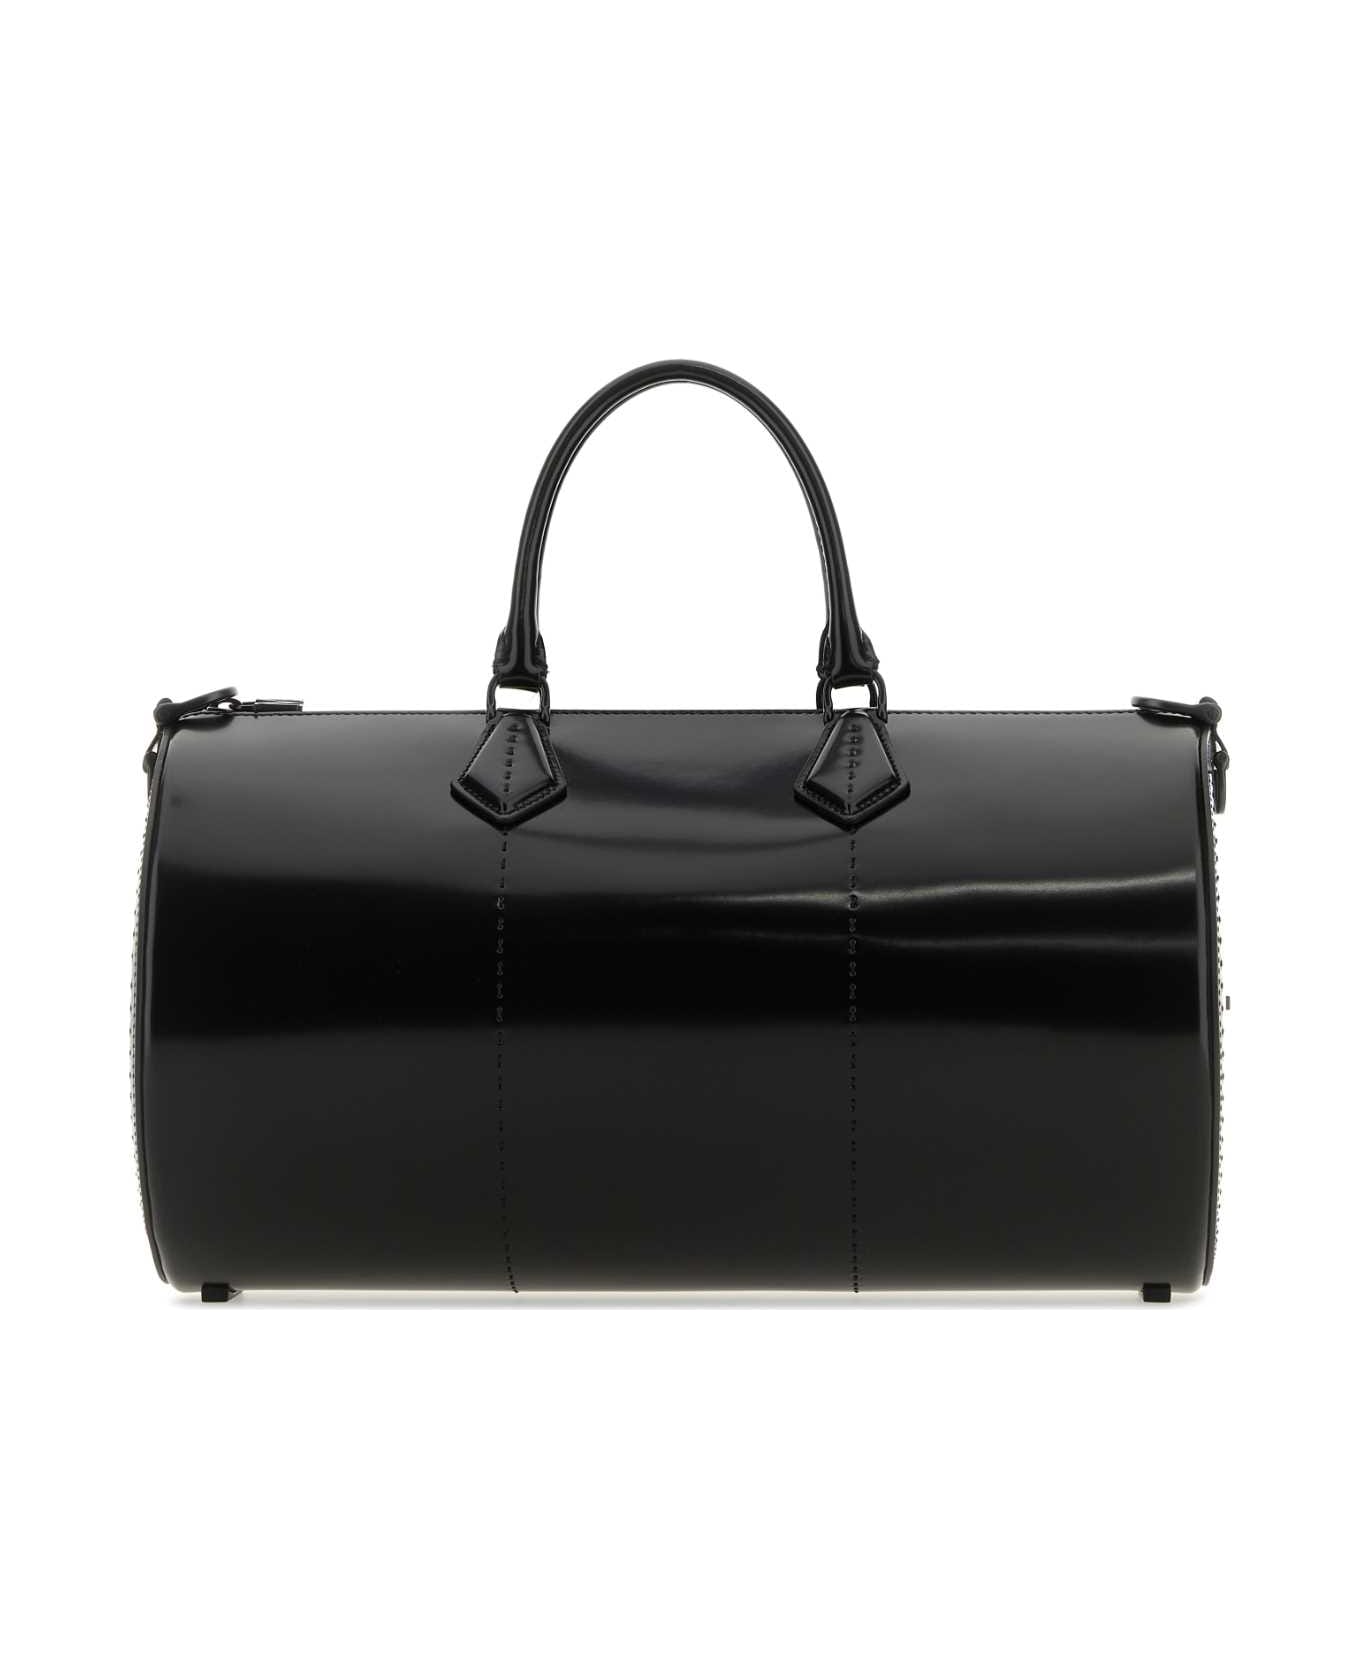 Max Mara Black Leather Brushedrolll Handbag - NERO